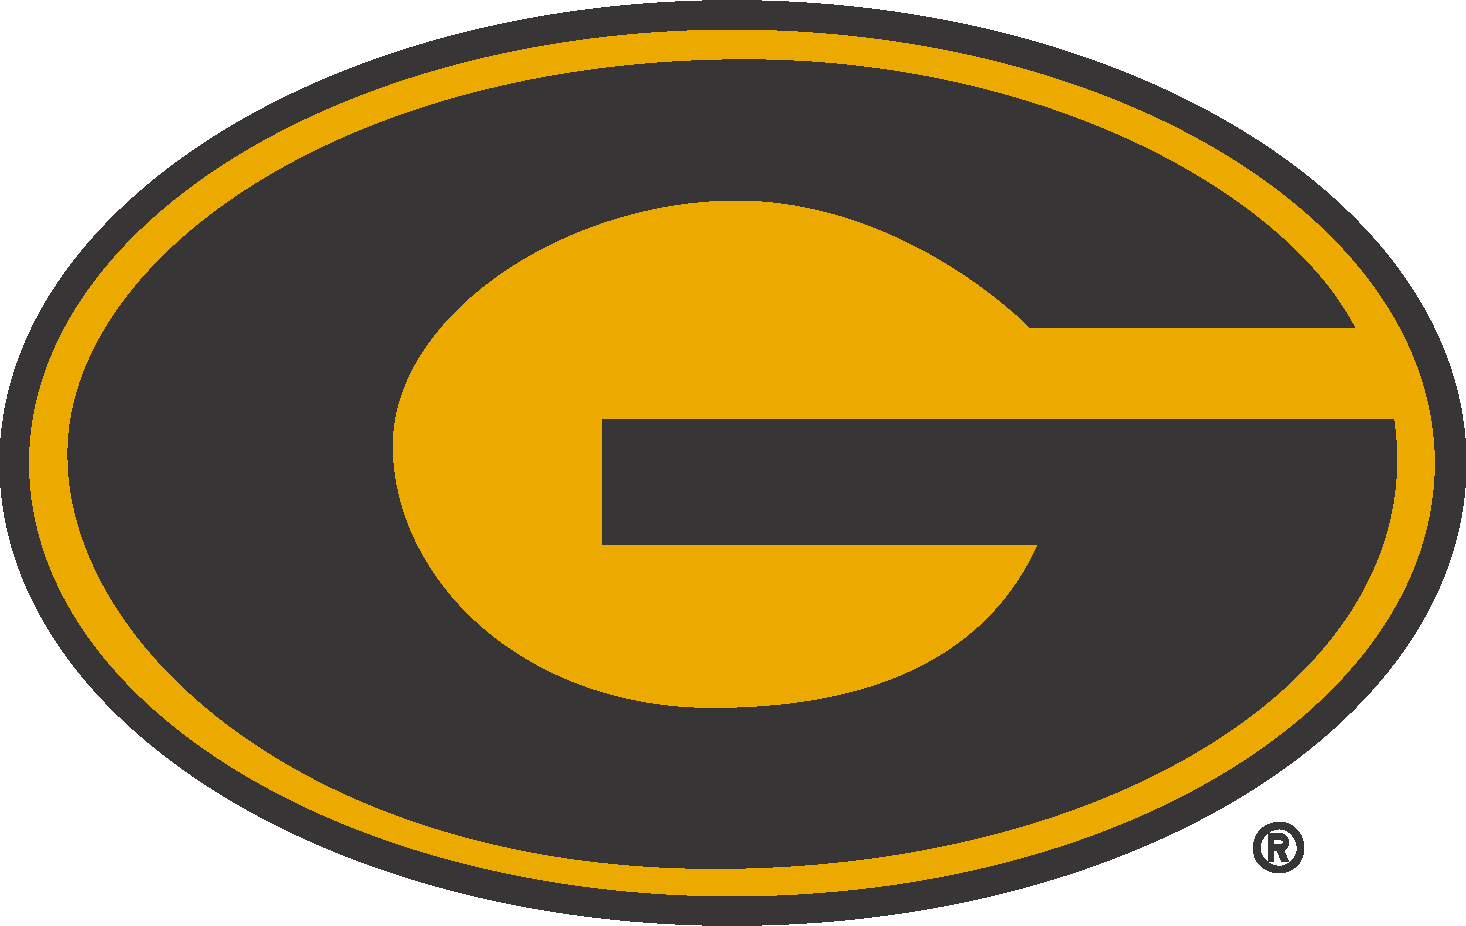 Grambling State University Logo (GSU) png